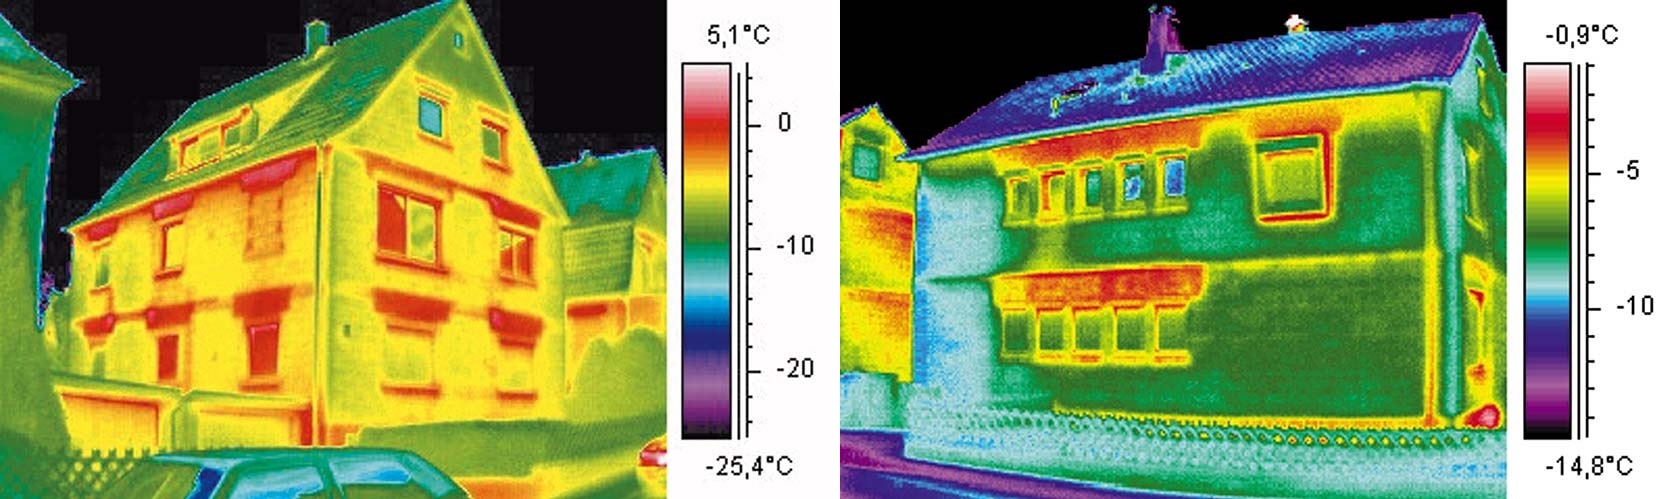 Thermographie de deux maisons